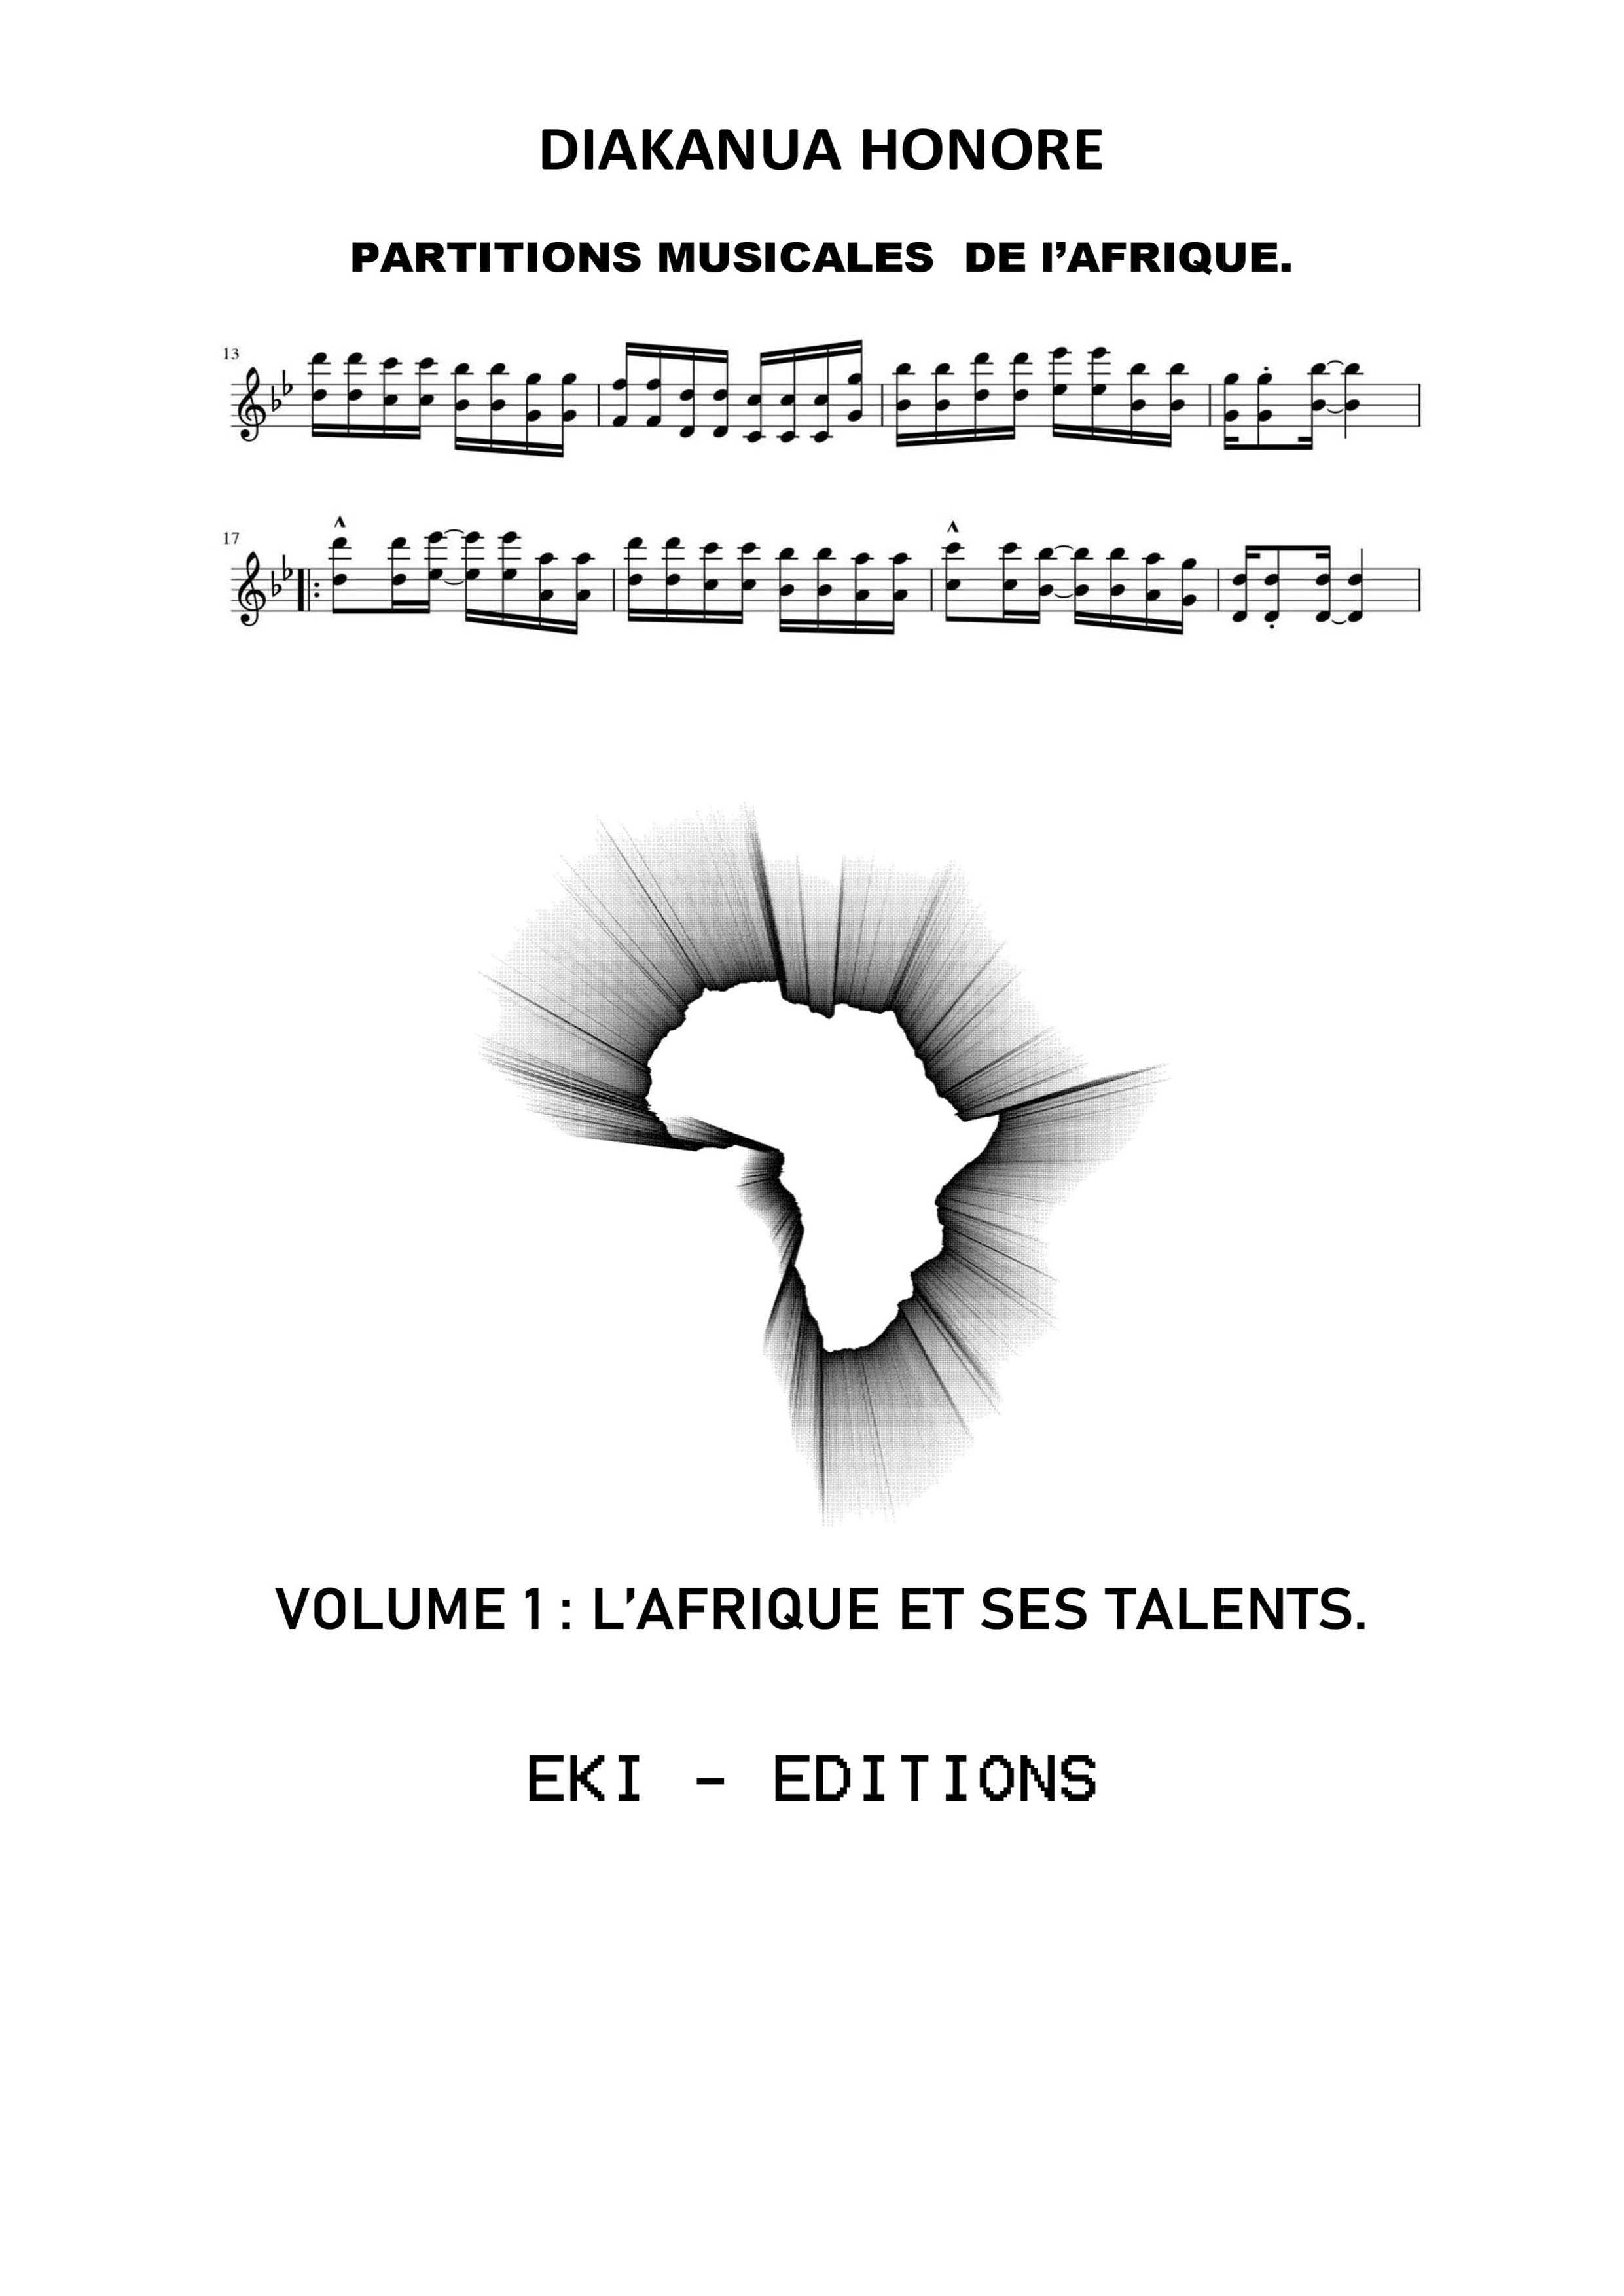 PARTITIONS MUSICALES DE L’AFRIQUE